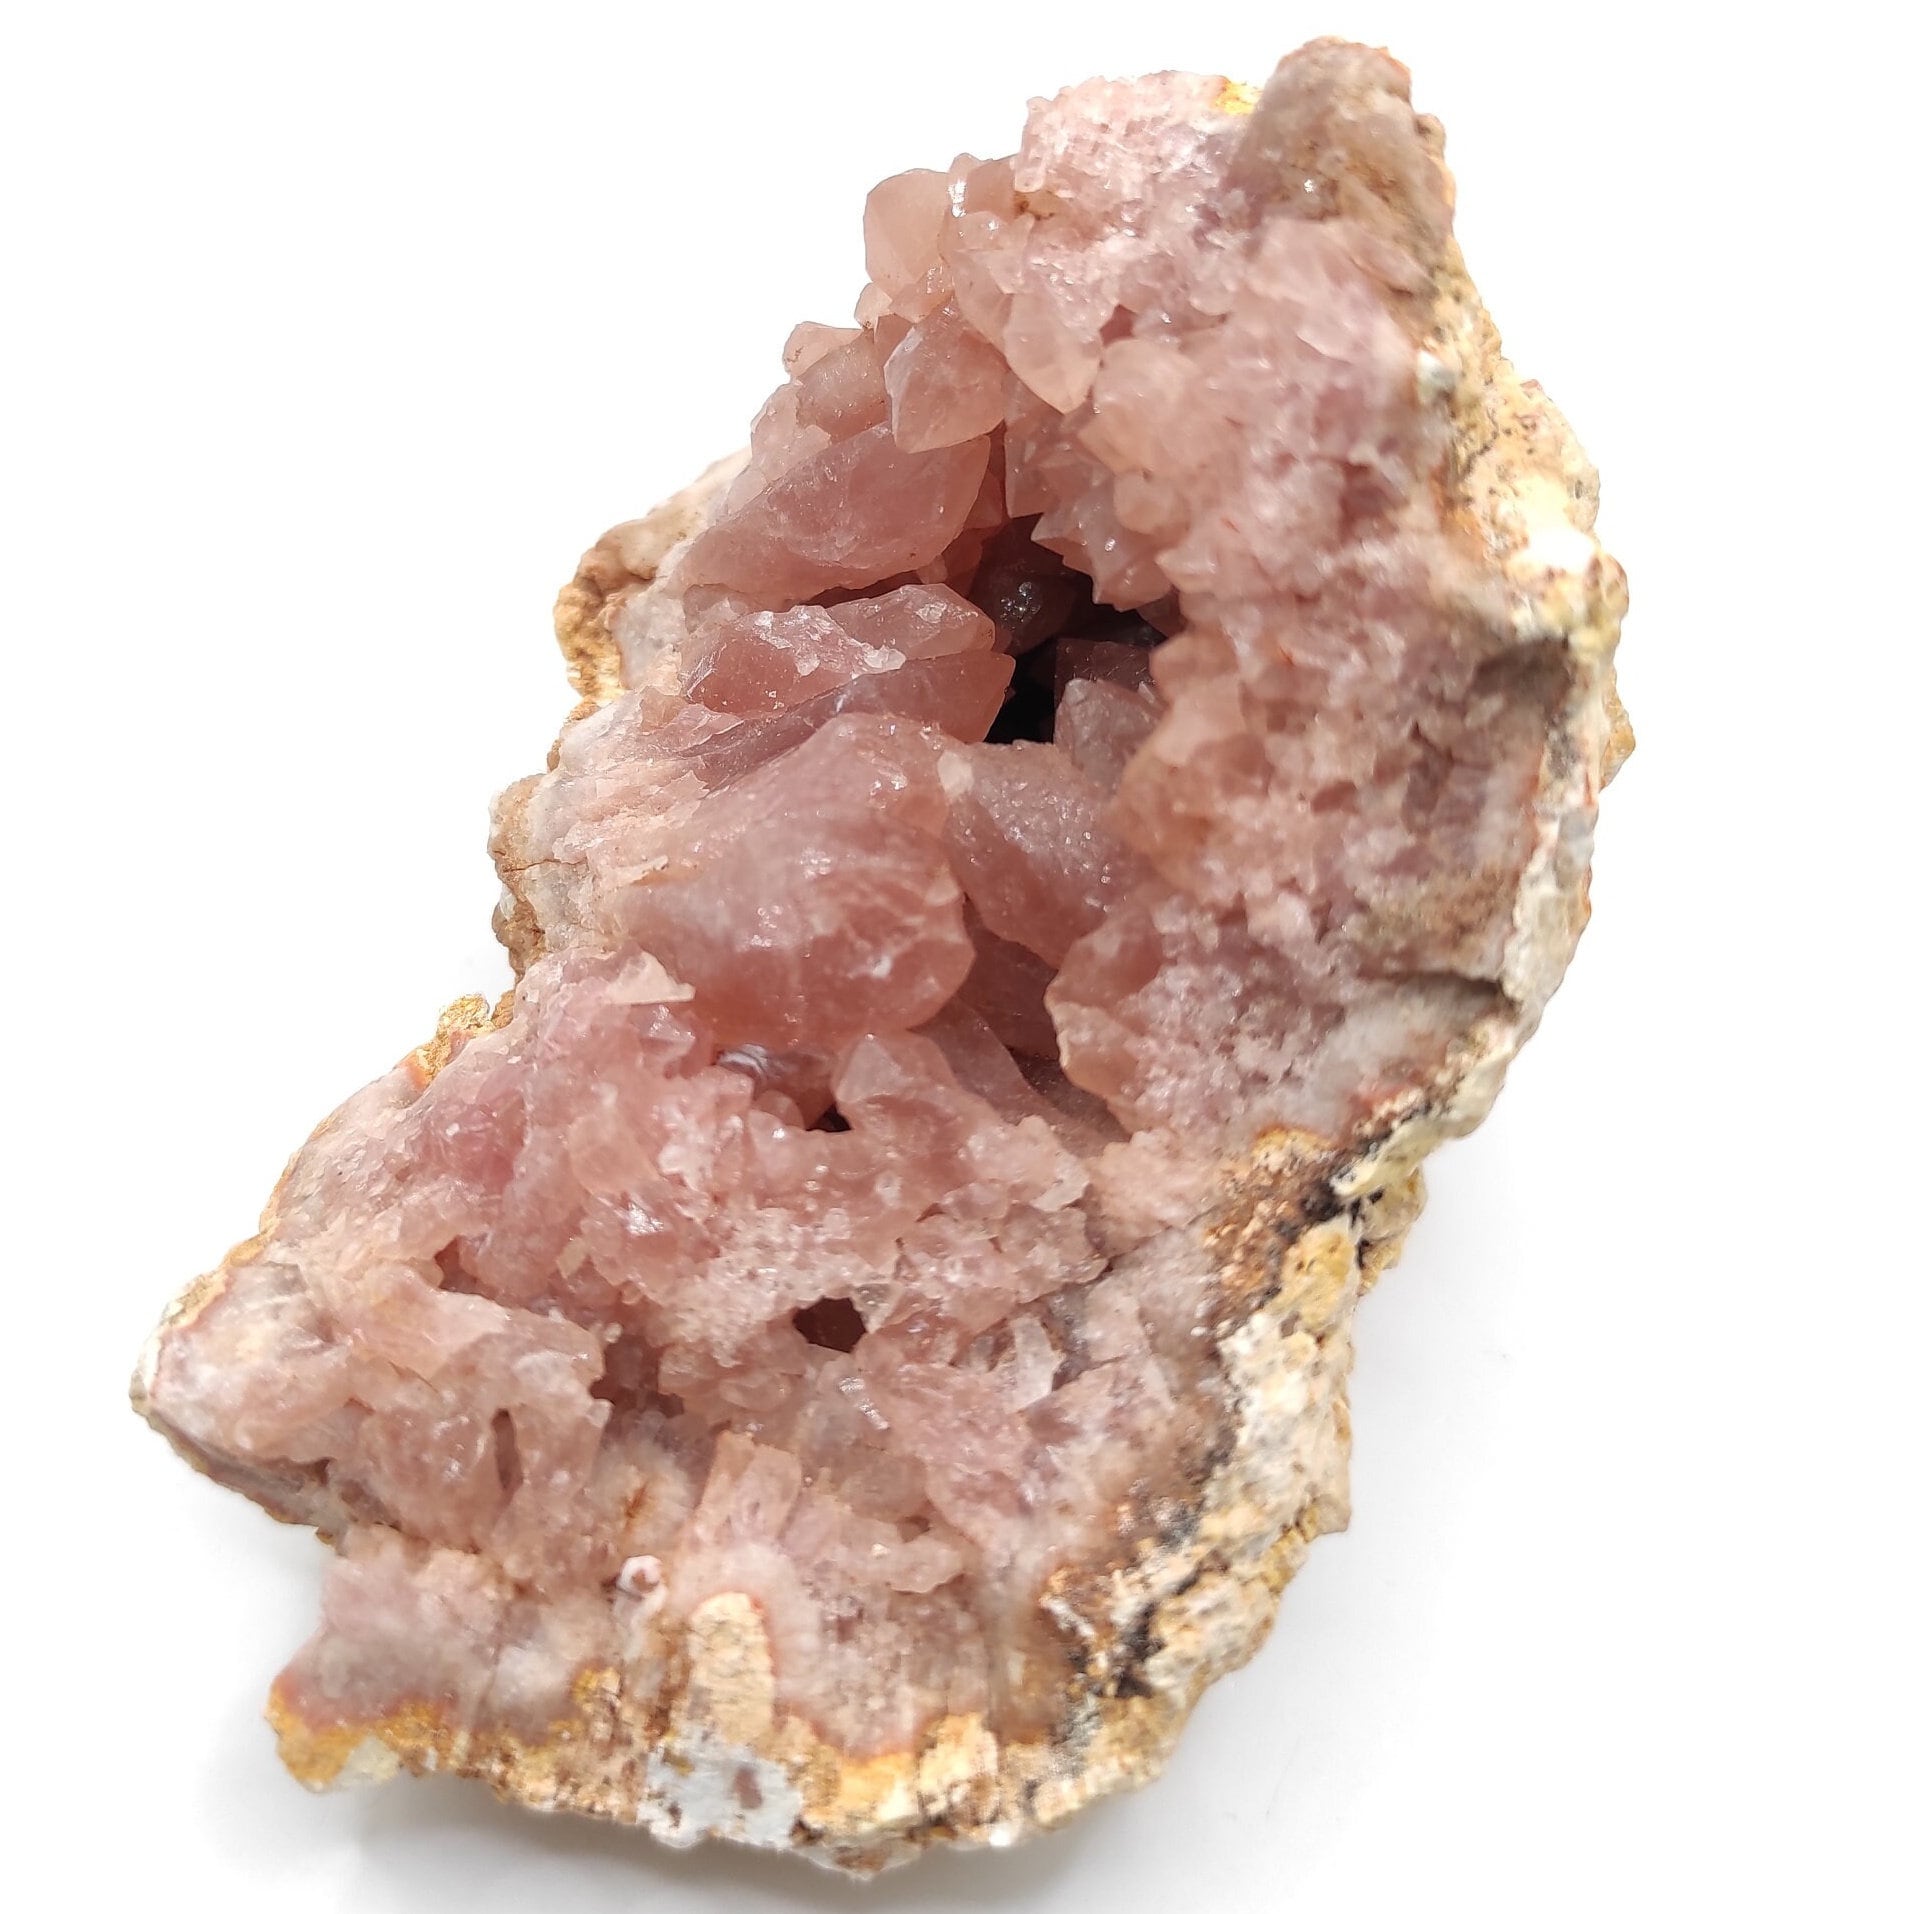 206g Pink Amethyst Geode - Neuquén, Argentina - Natural Raw Pink Amethyst Crystal - Pink Amethyst Geode Cluster - Crystallized Pink Amethyst